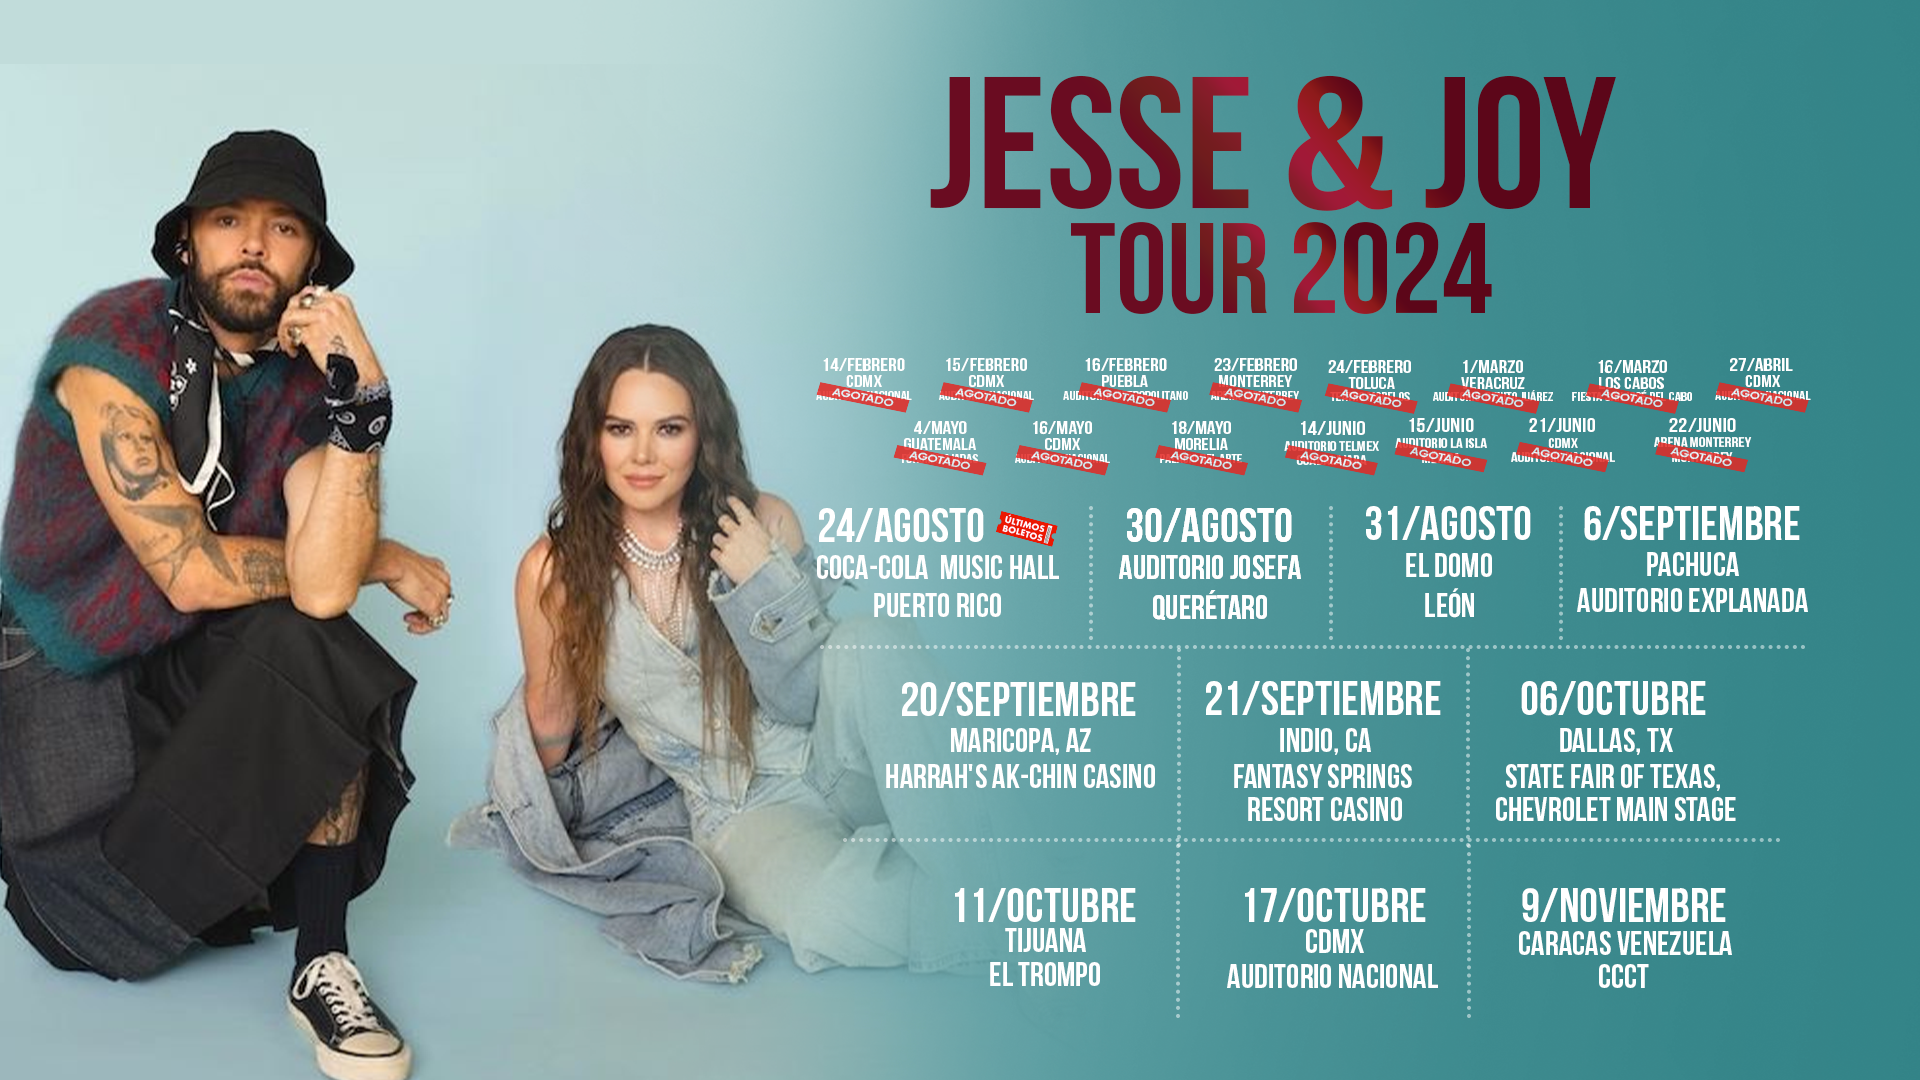 fechas tour 2024 de jesse & joy